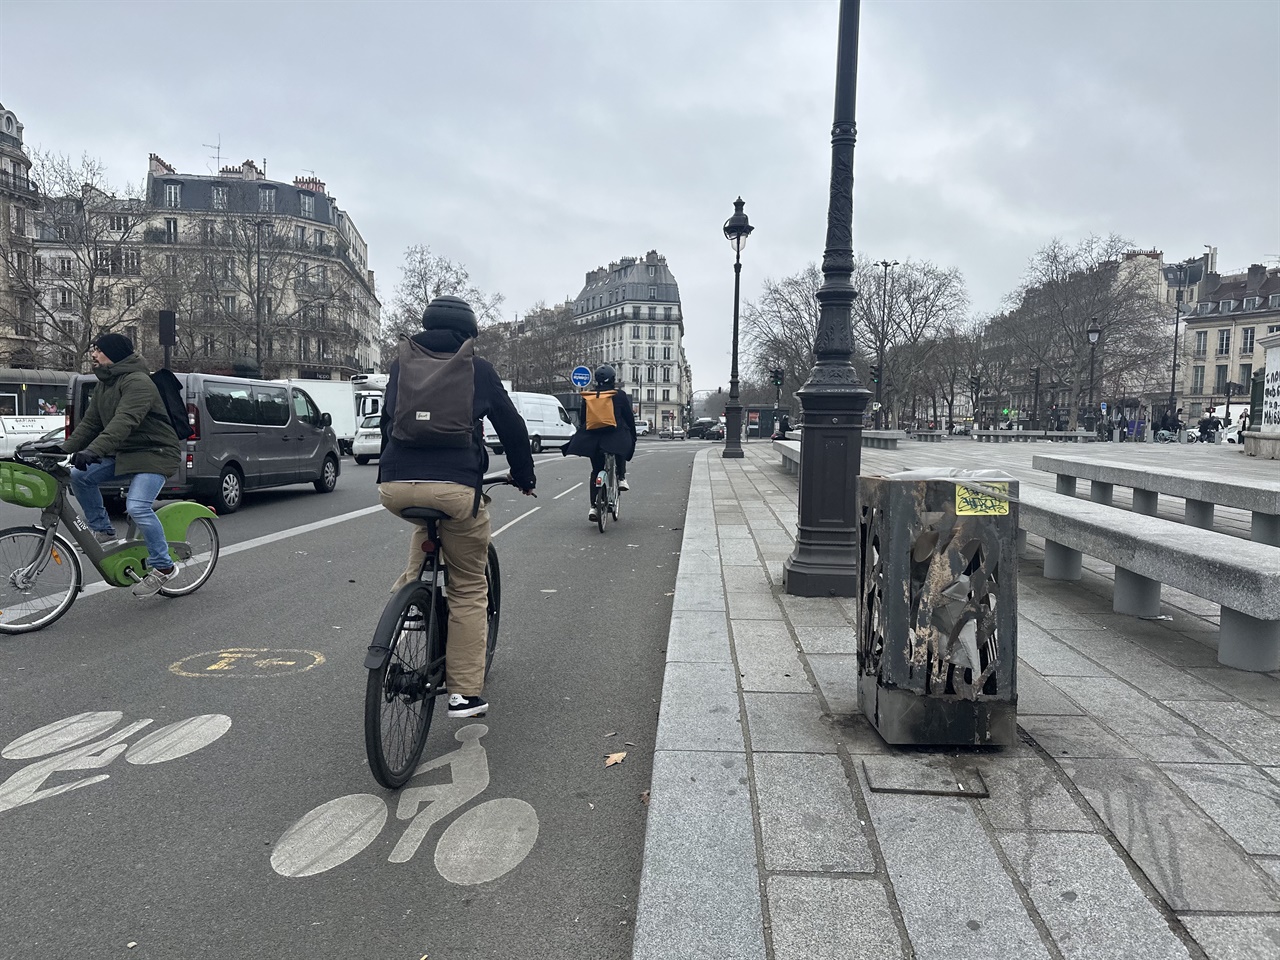 대도시 파리의 변화는 많은 세계인에 의해 주목받고 있다. 파리의 심장부를 포함 파리 전역에서의 변화가 수년째 진행중이다. 본래 차에게만 허용되었던 바스티유광장 인근을 자전거로 순환할수 있다. 사진에서는 양방향 자전거 도로를 통해 오가는 파리시민들을 볼 수 있다.